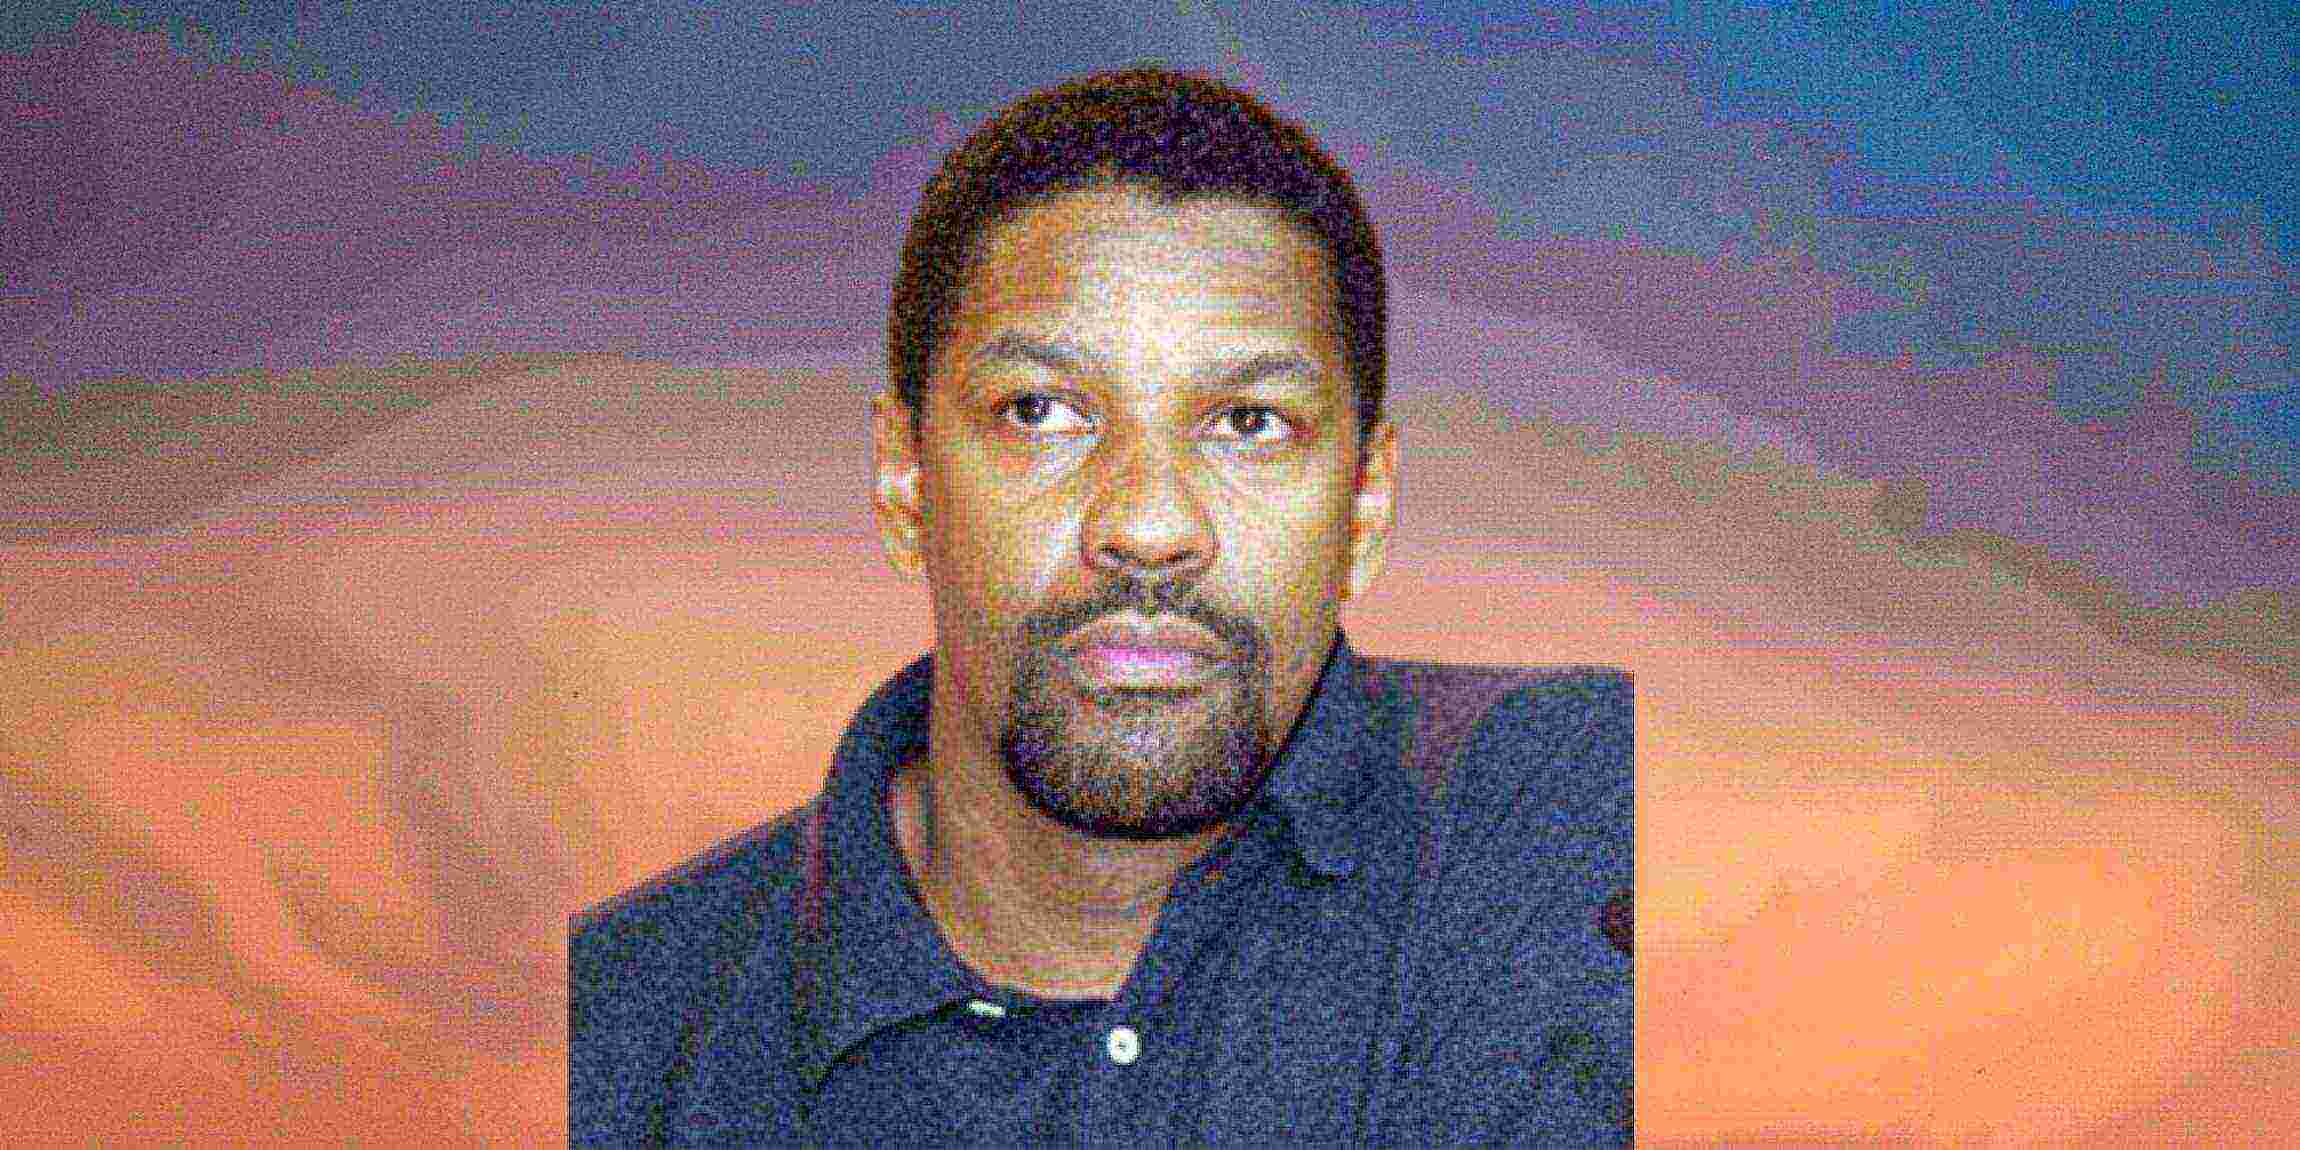 Photo of Denzel Washington, via Wikipedia commons